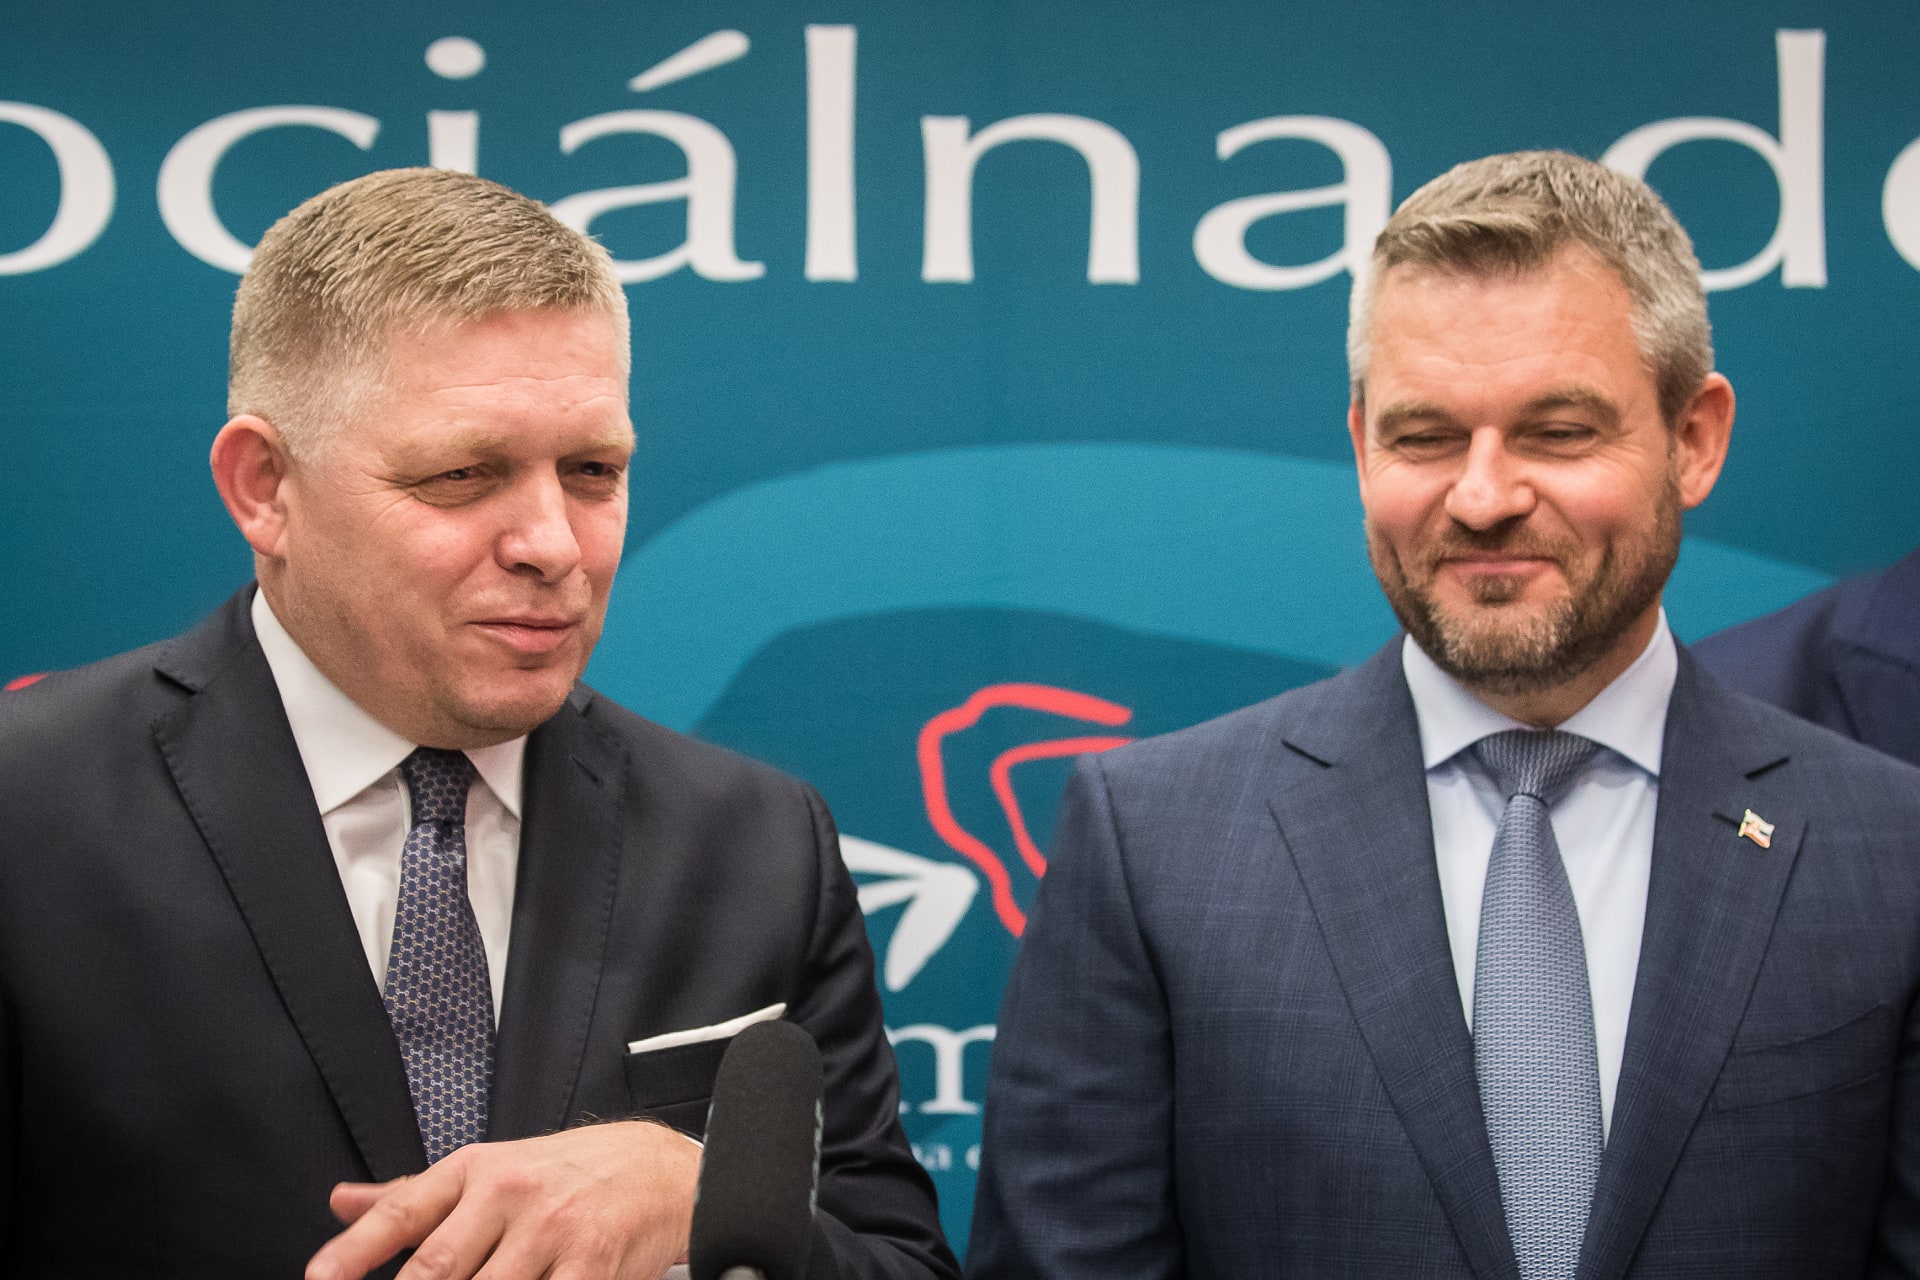 Opoziční strany na Slovensku získaly přes 585 tisíc podpisů pod petici za vypsání referenda o nových volbách.